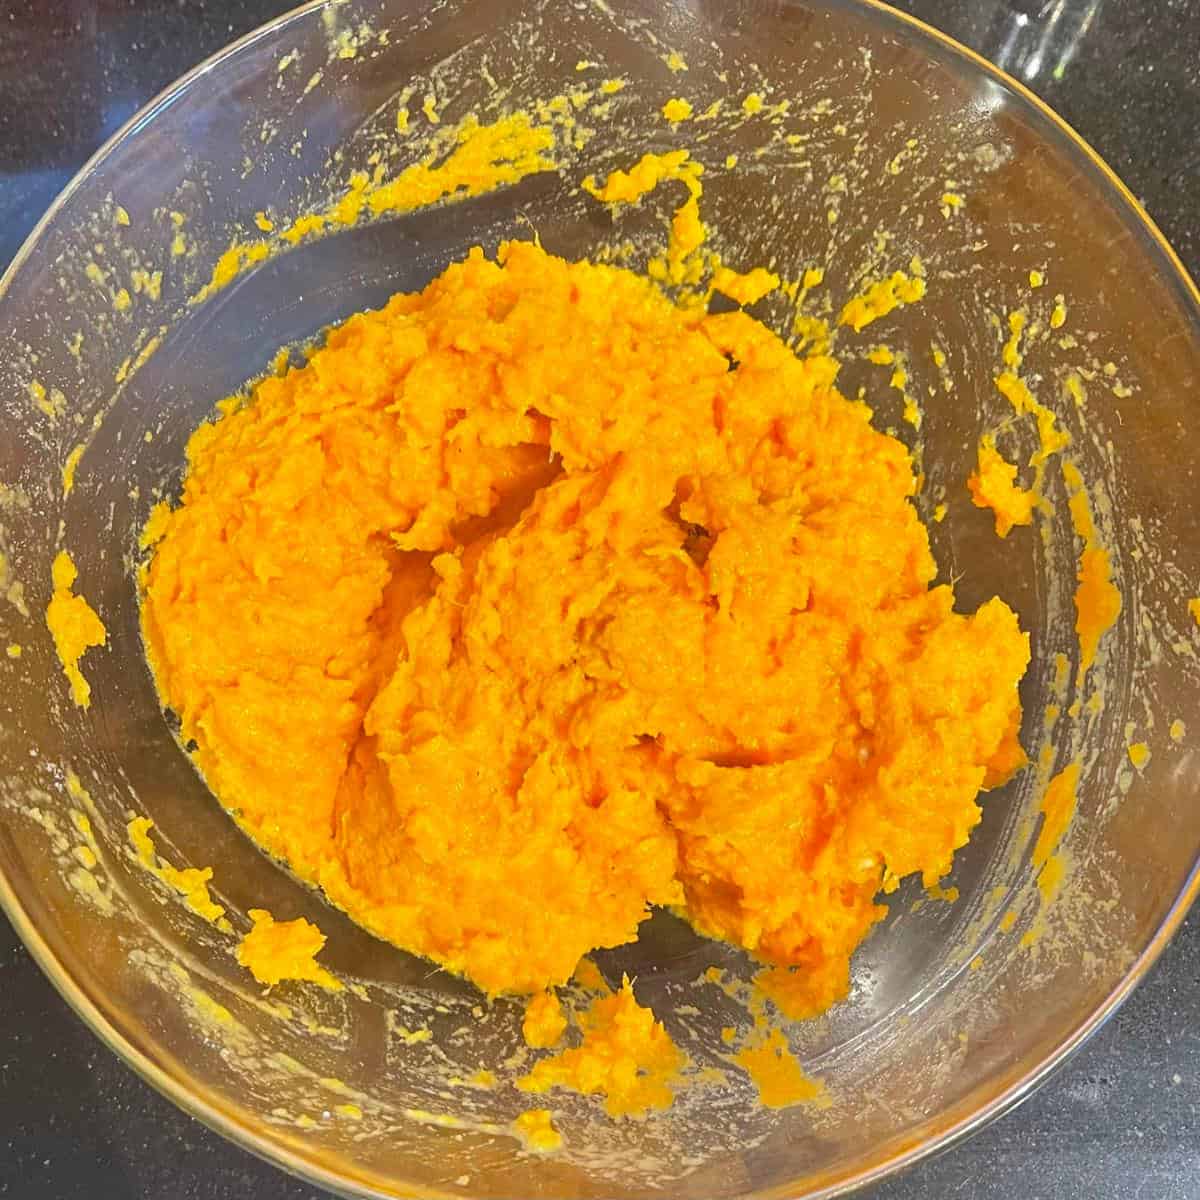 Mashed orange sweet potatoes in bowl.